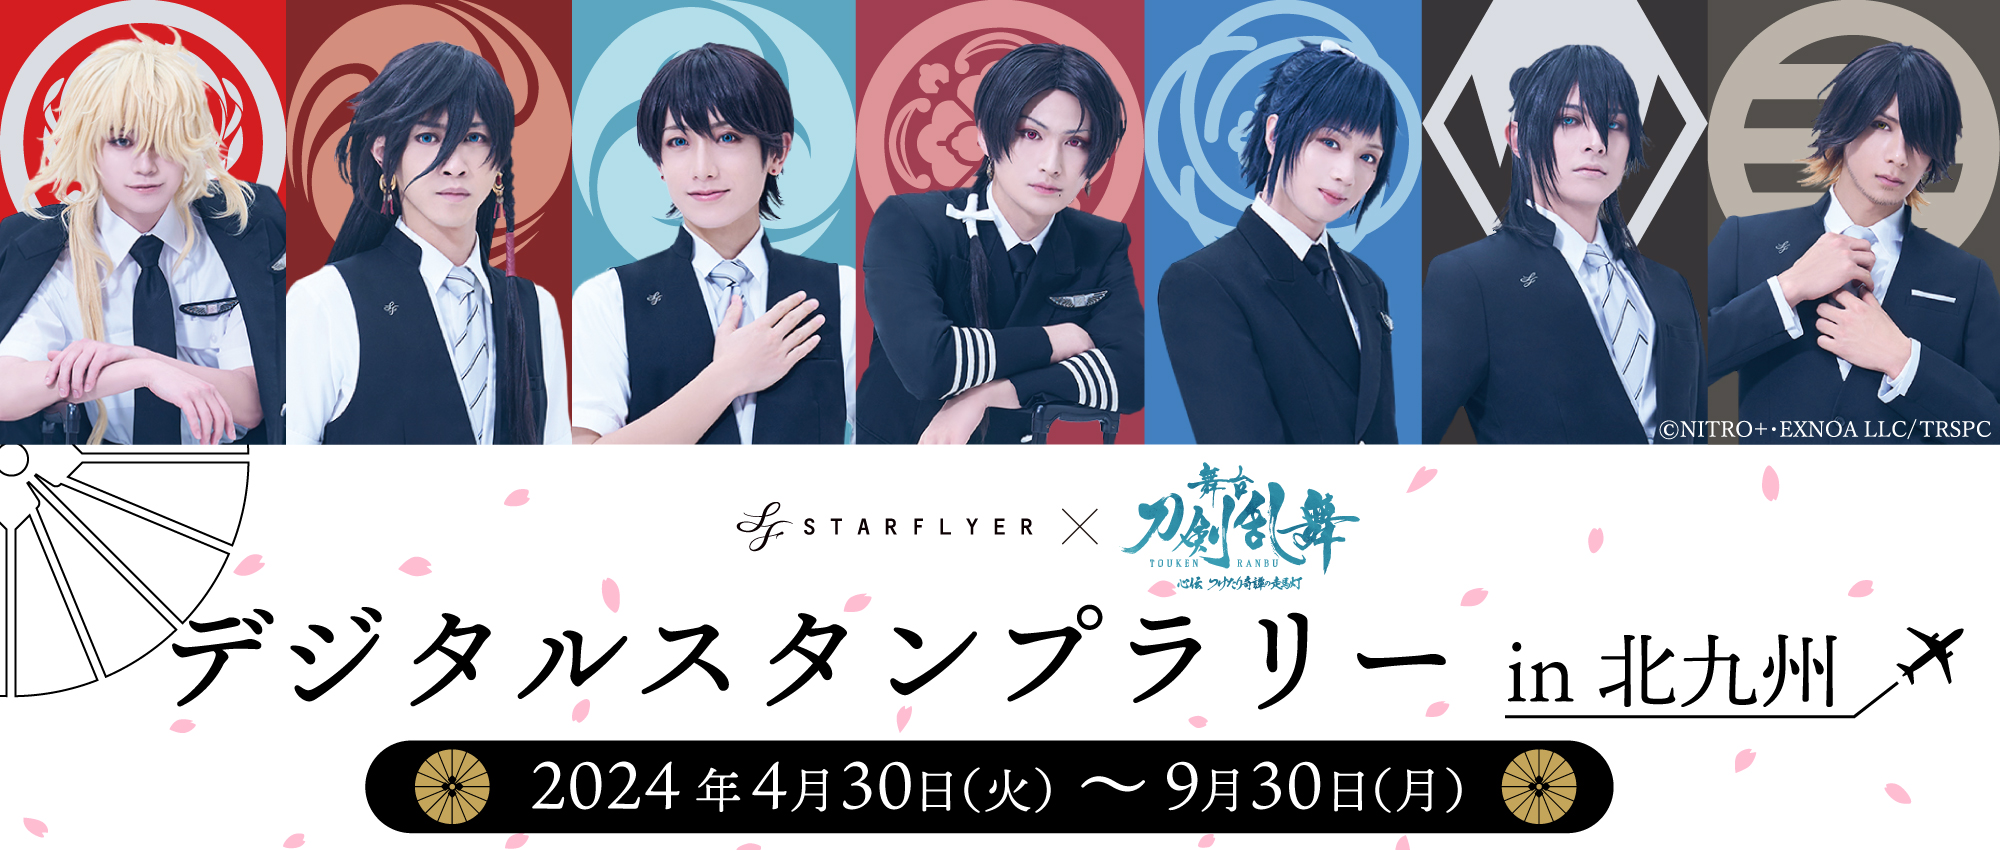 STARFLYER × 舞台『刀剣乱舞』 デジタルスタンプラリー in 北九州